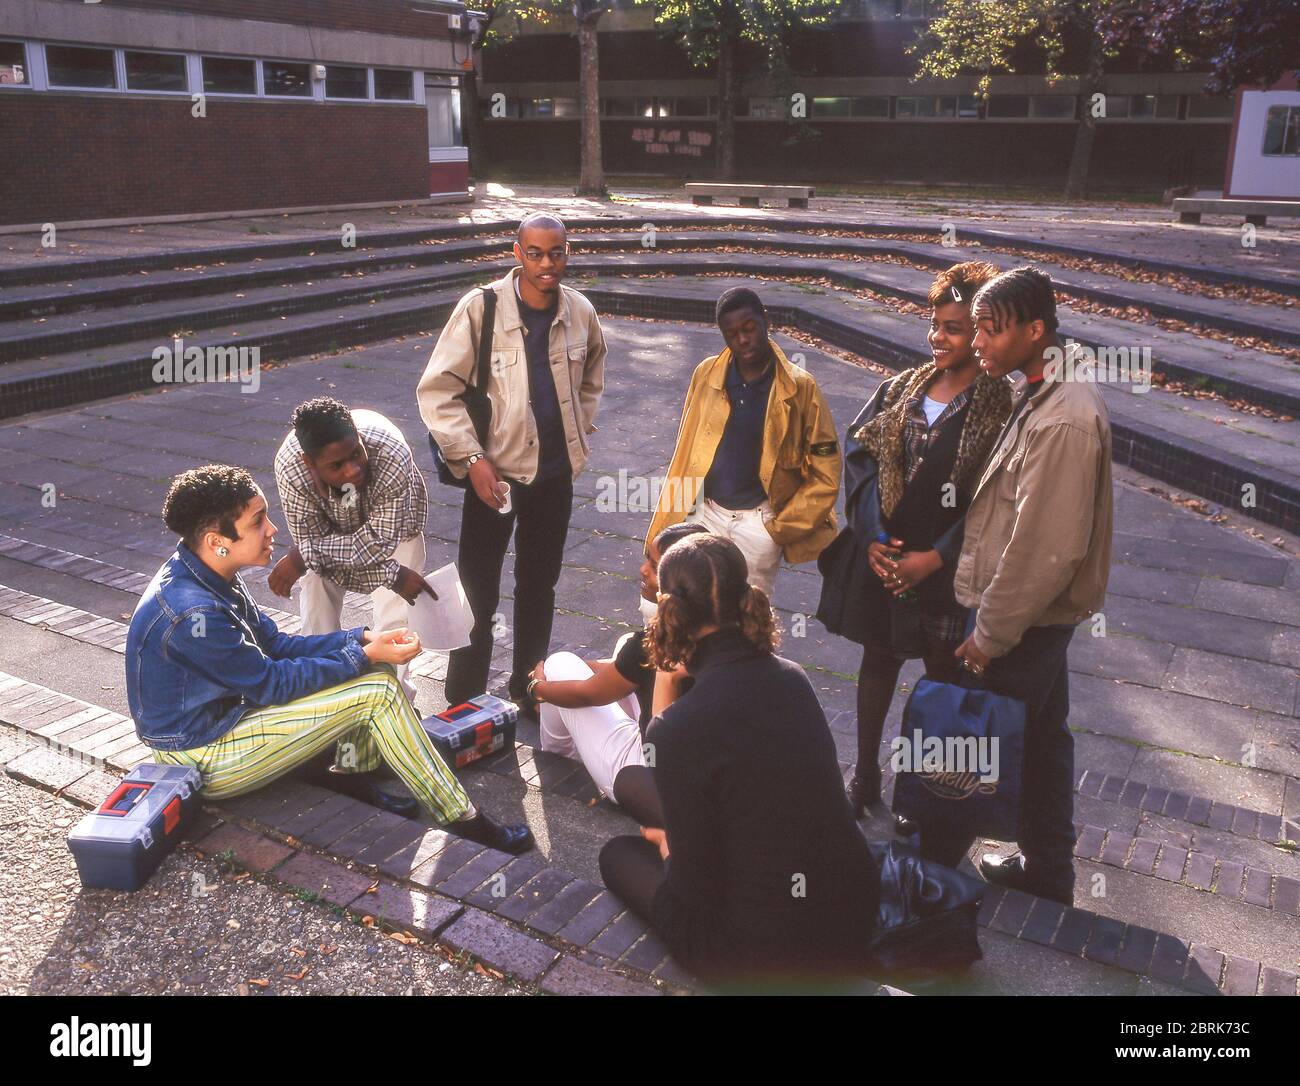 College group gathered on university campus, Surrey, England, United Kingdom Stock Photo